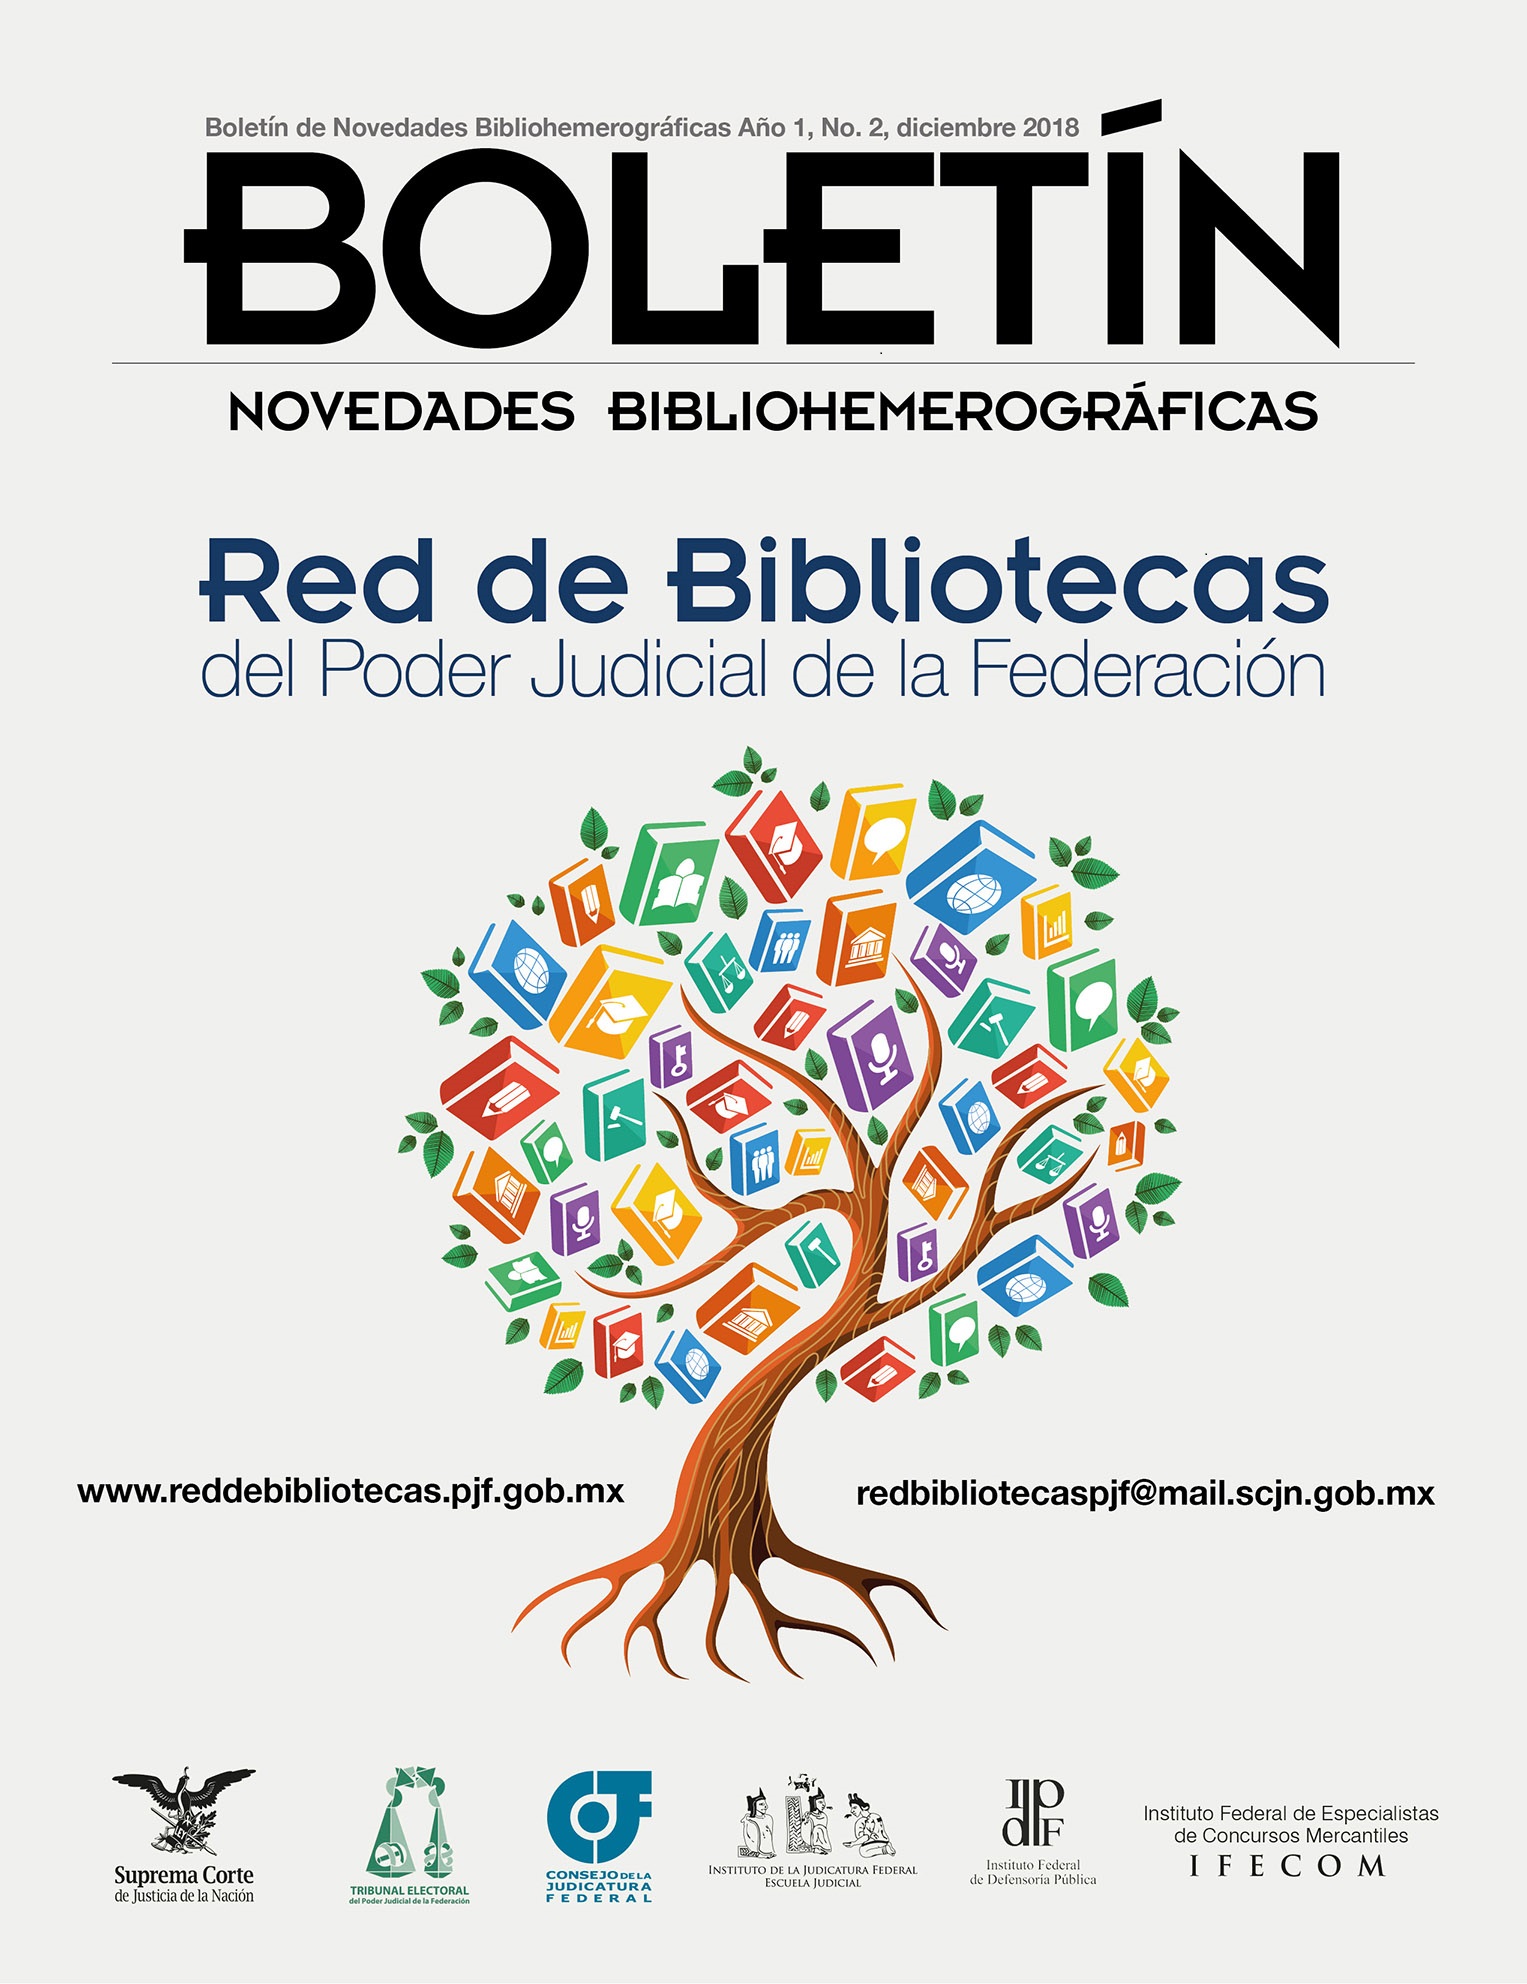 Boletín de Novedades Bibliohemerográficas de la Red de Bibliotecas, diciembre 2018